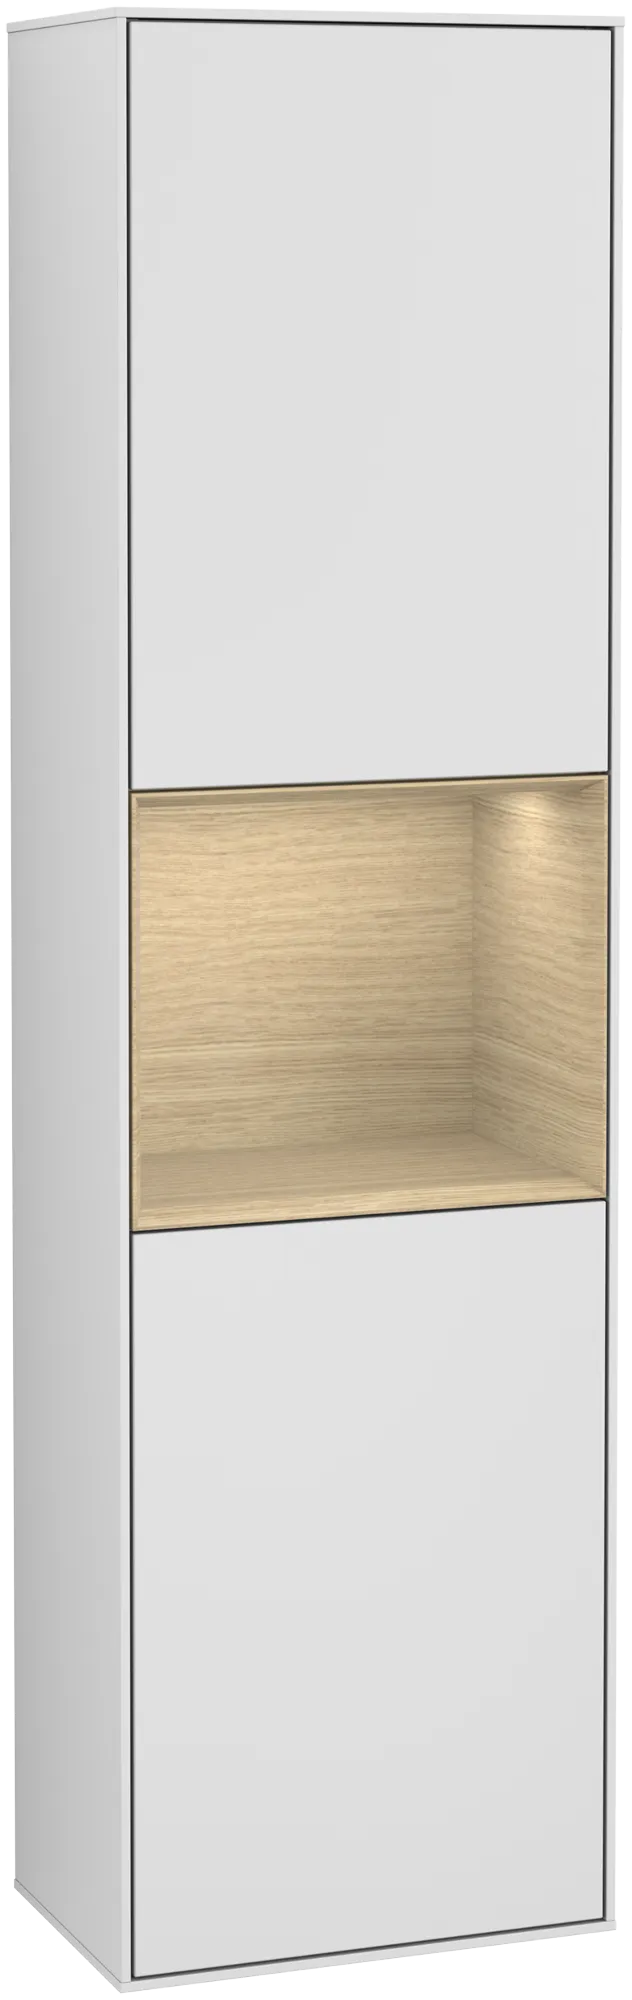 Bild von VILLEROY BOCH Finion Hochschrank, mit Beleuchtung, 2 Türen, 418 x 1516 x 270 mm, White Matt Lacquer / Oak Veneer #G470PCMT